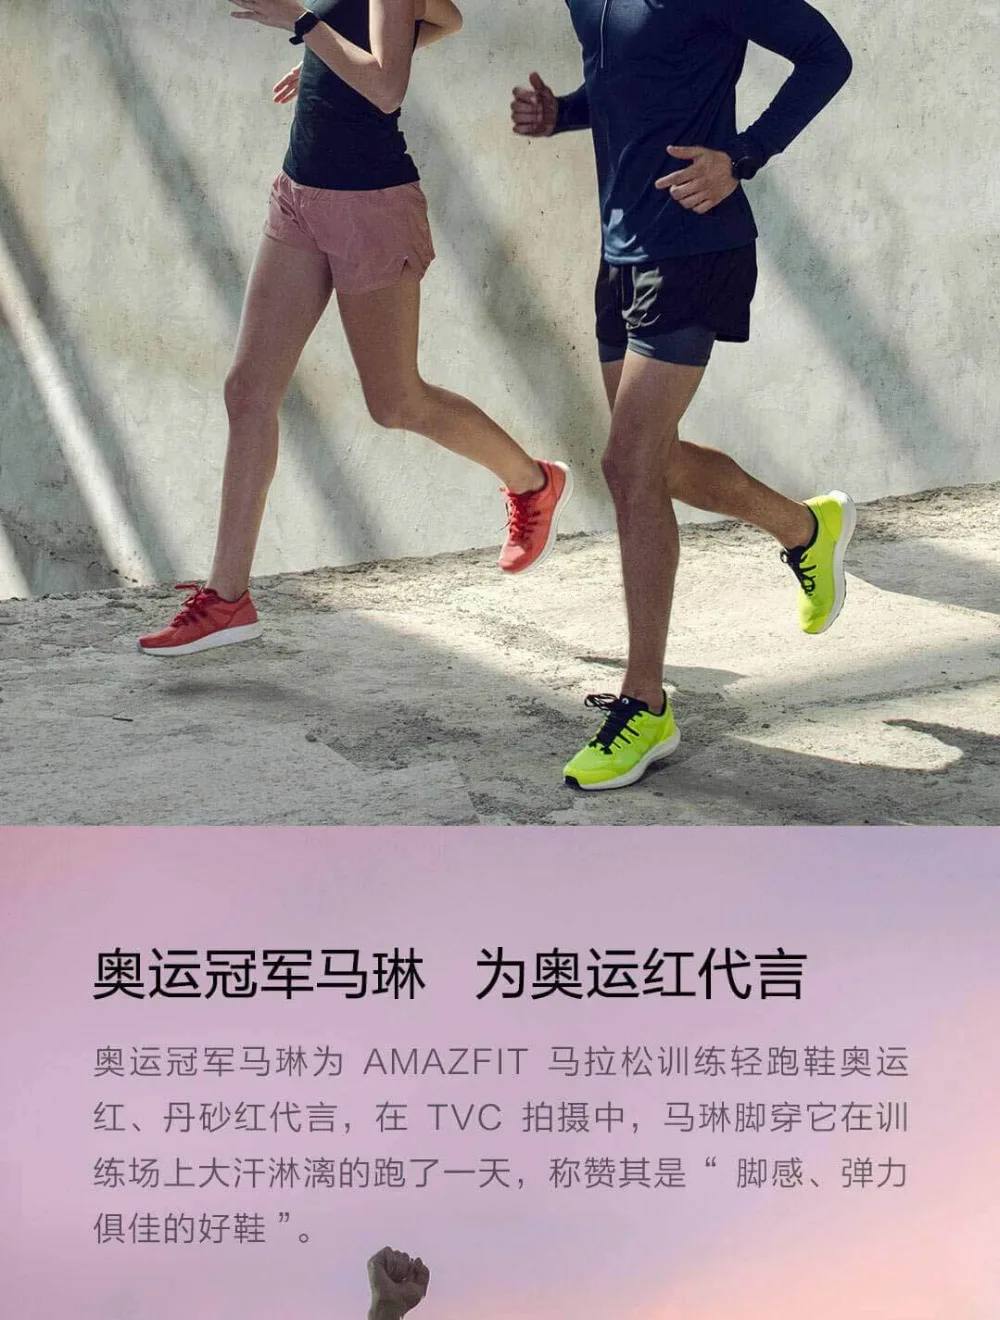 Xiaomi Amazfit Marathon тренировочные кроссовки легкая спортивная обувь дышащая Стабильная поддержка для мужчин и женщин спортивная обувь Прямая